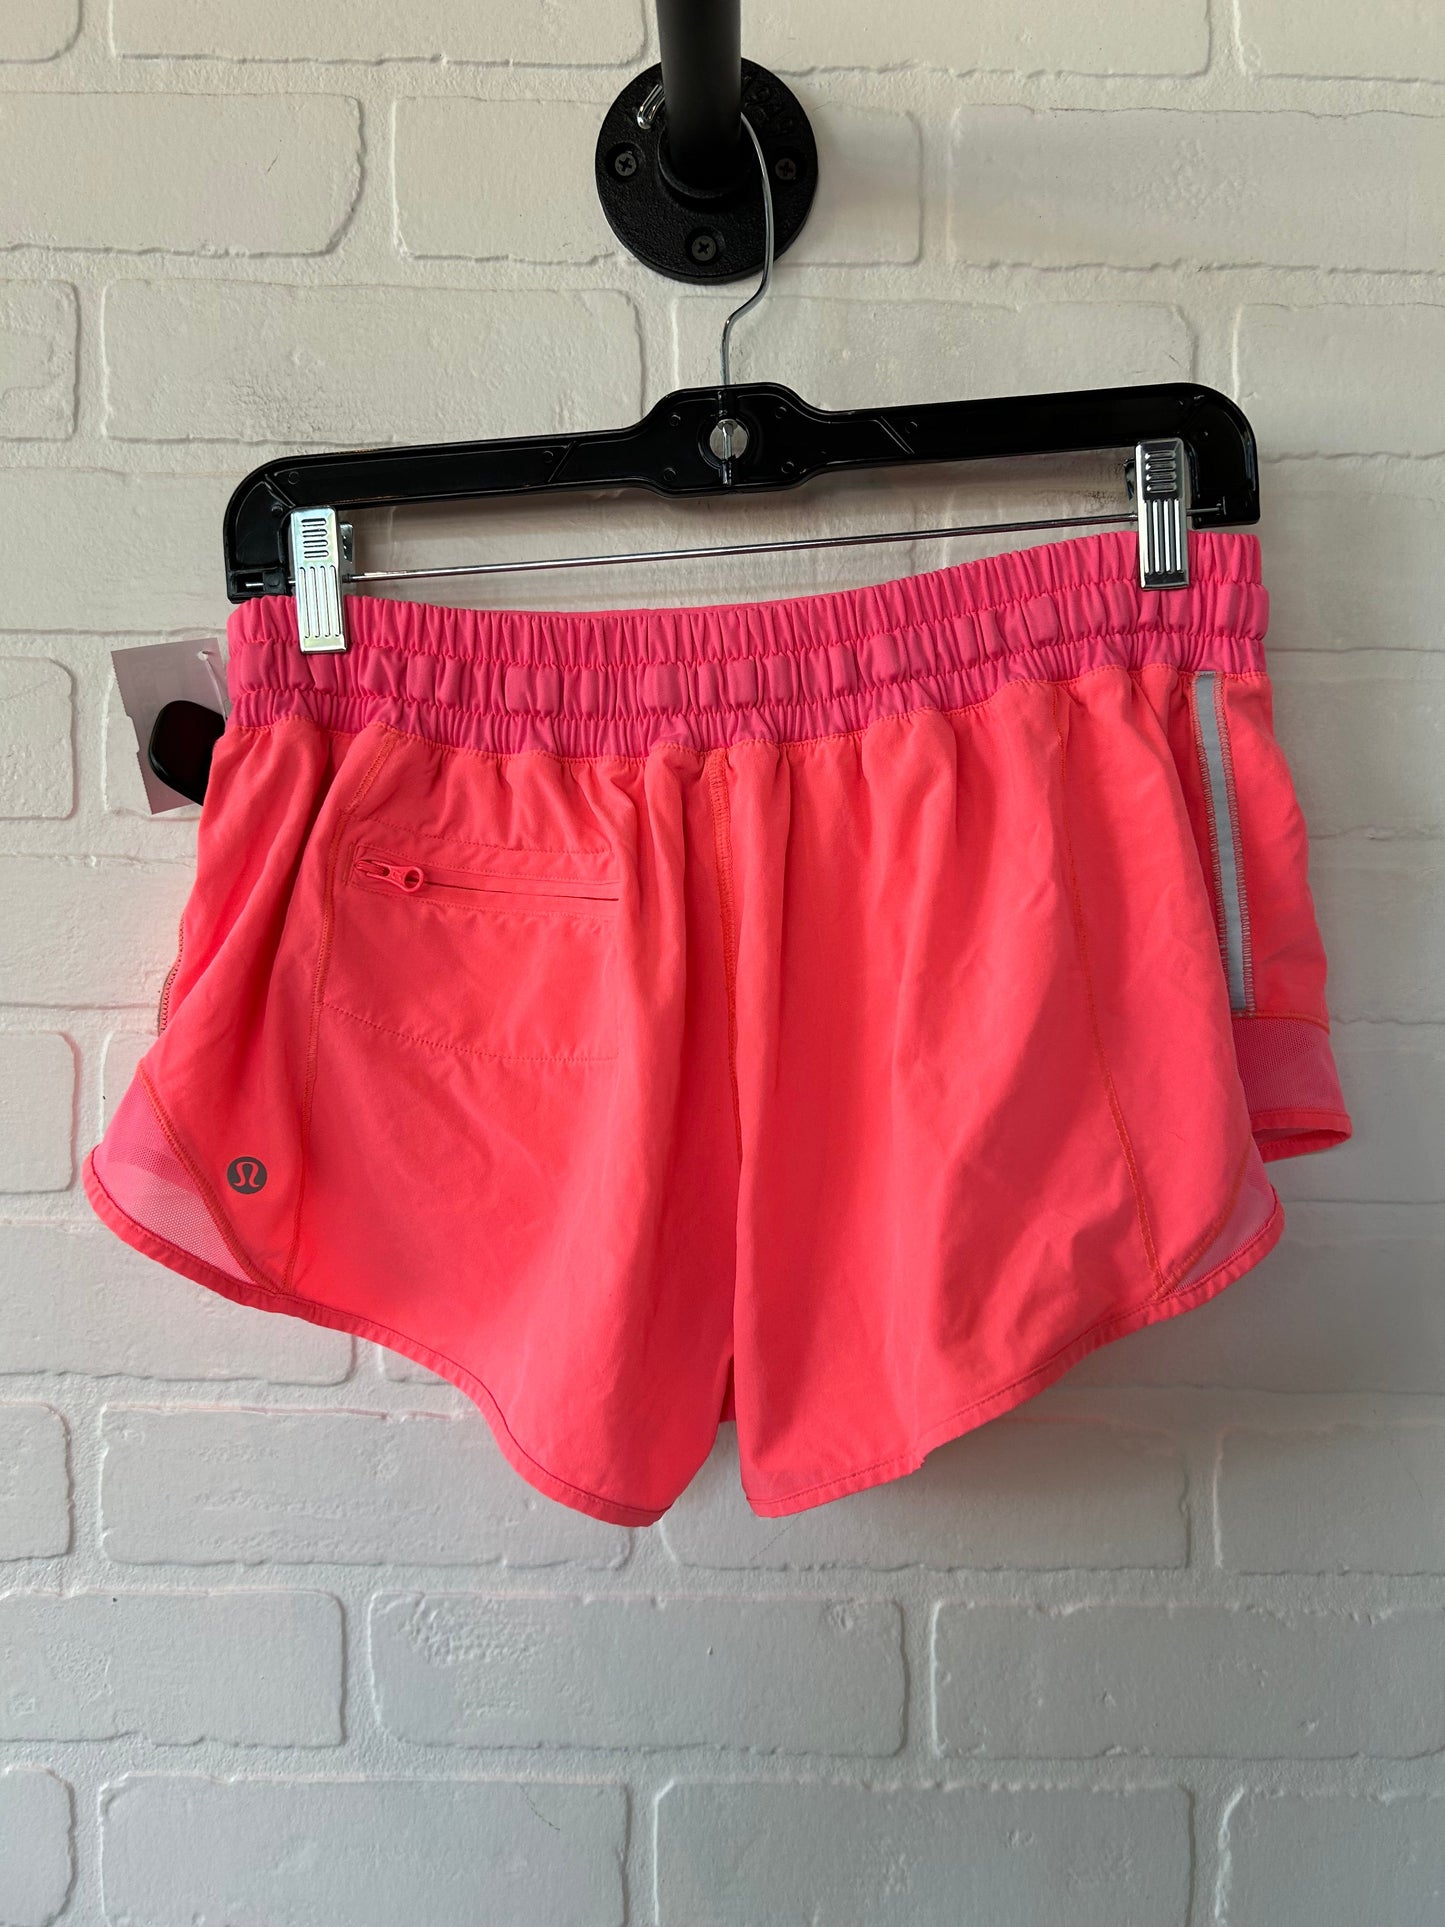 Pink Athletic Shorts Lululemon, Size 10